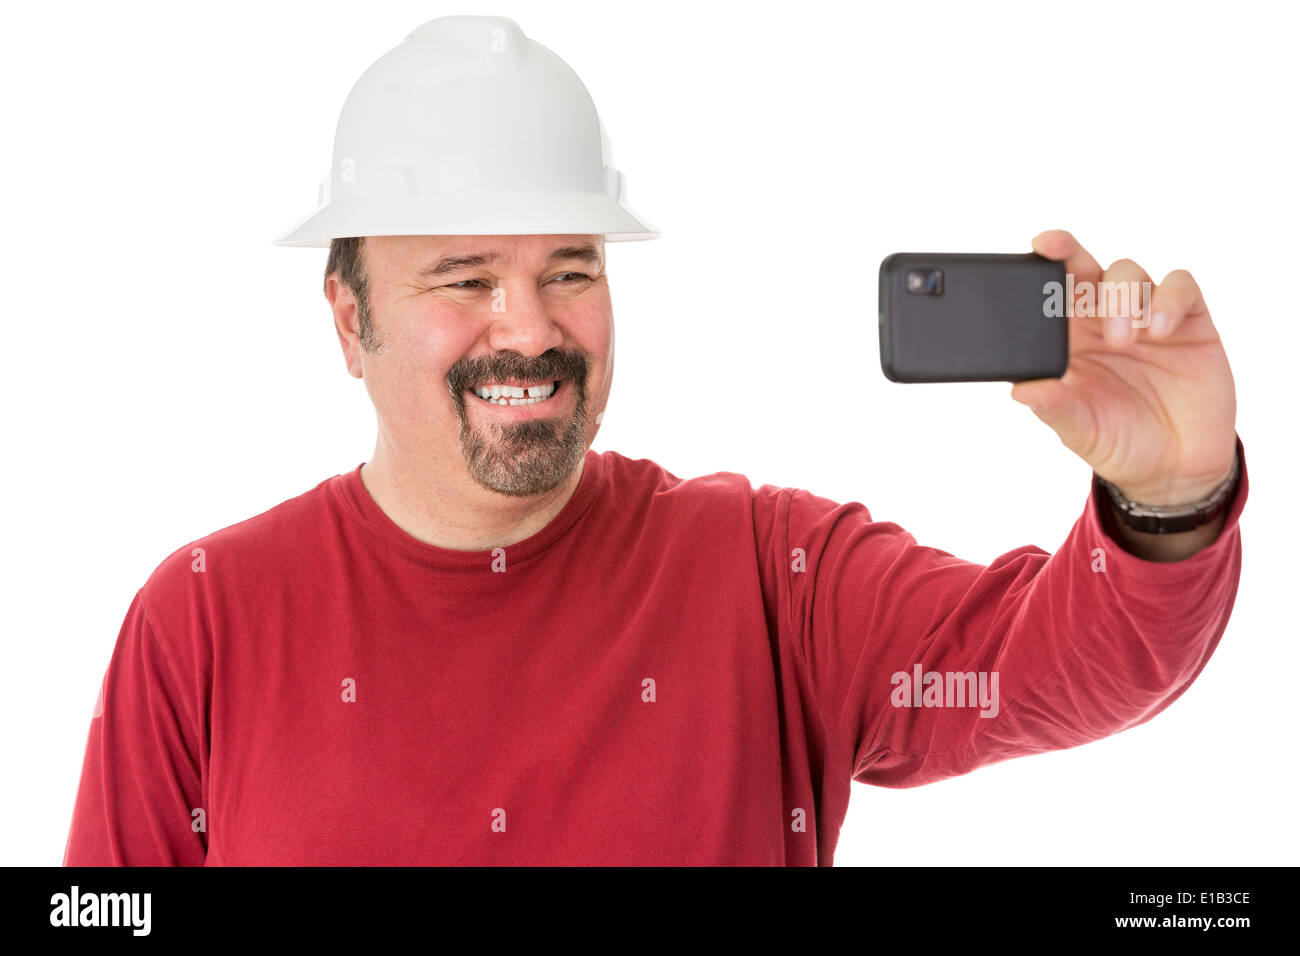 Workman con un bel pizzetto barba lo svezzamento un hardhat posa per un autoritratto dando una cheesy grin come egli guarda nella telecamera o Foto Stock